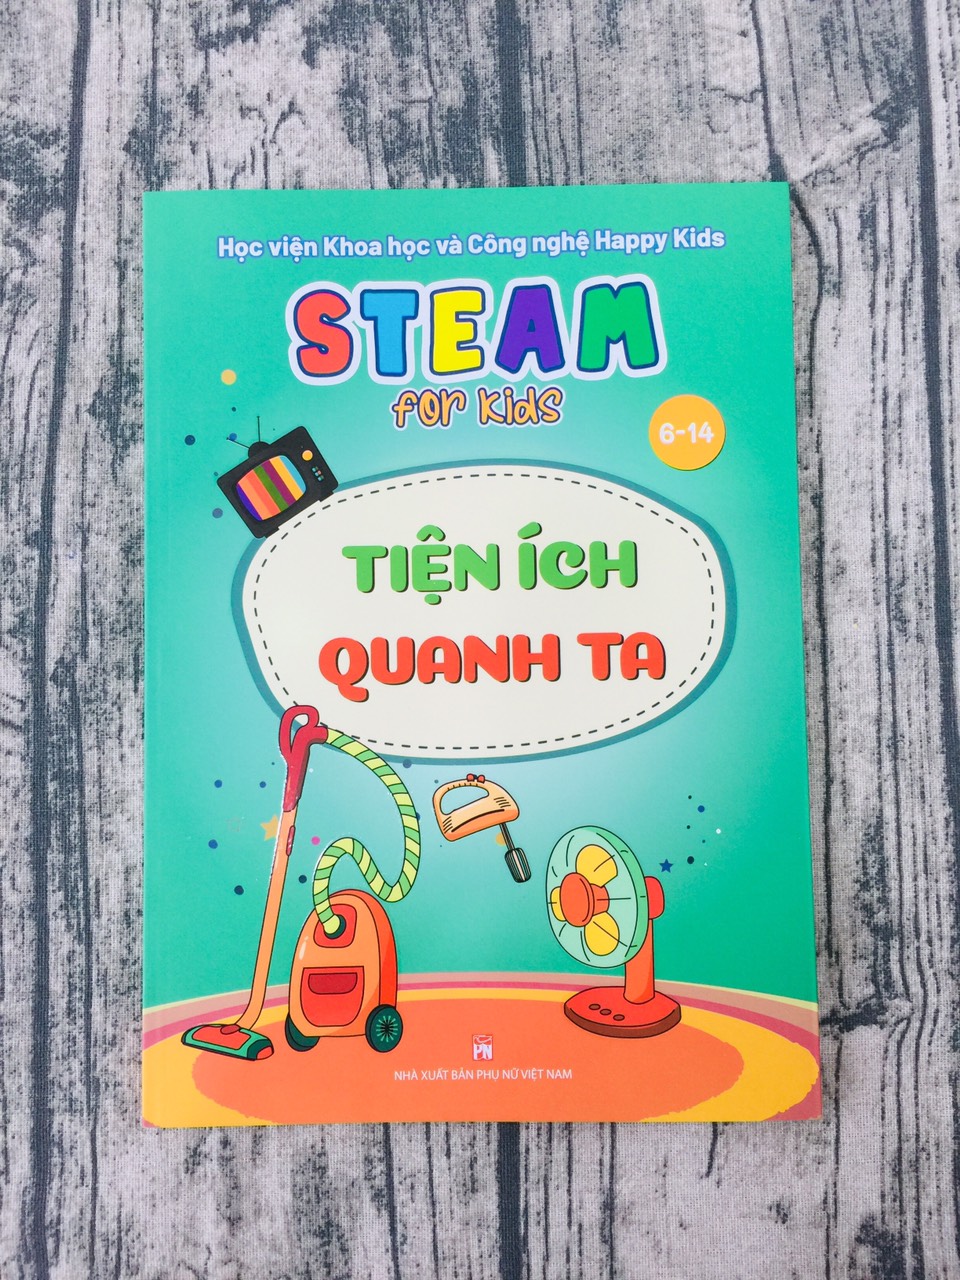 Steam For Kids (6-14) - Tiện Ích Quanh Ta